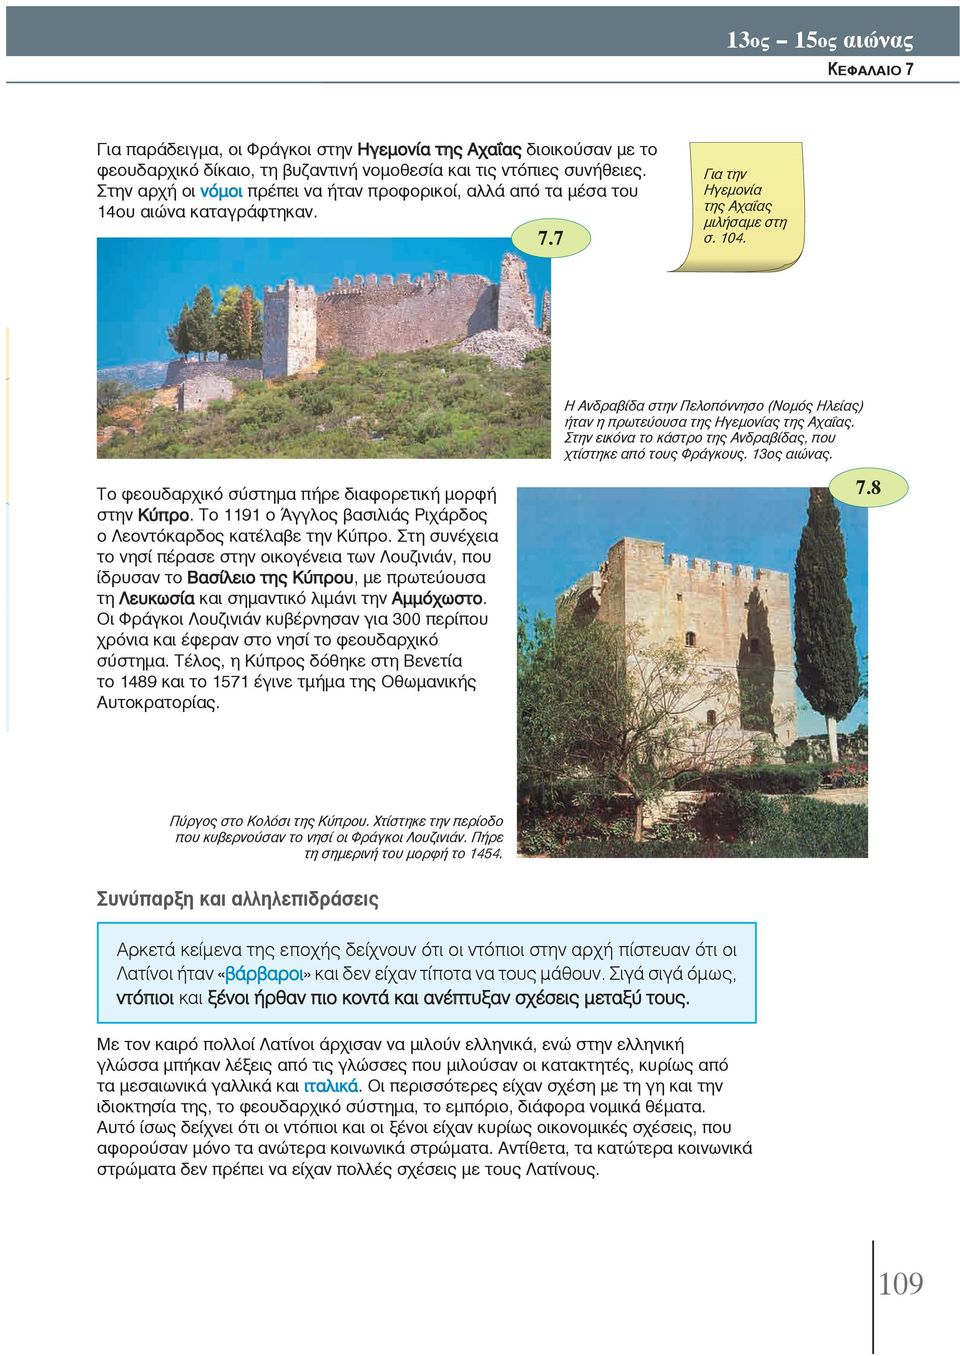 Η Ανδραβίδα στην Πελοπόννησο (Νομός Ηλείας) ήταν η πρωτεύουσα της Ηγεμονίας της Αχαΐας. Στην εικόνα το κάστρο της Ανδραβίδας, που χτίστηκε από τους Φράγκους. 13ος αιώνας.